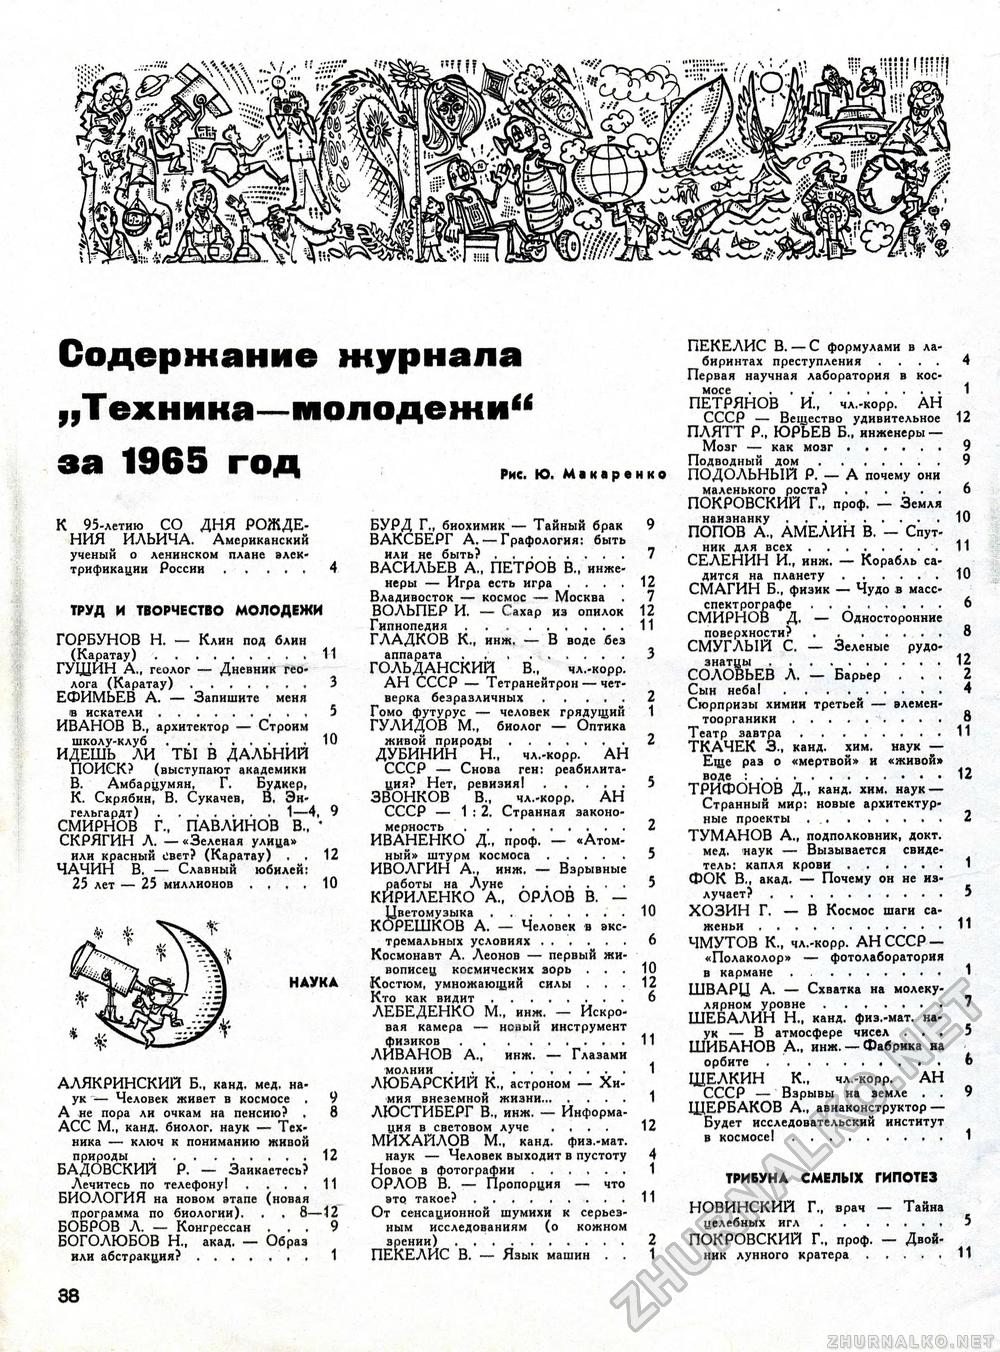  -  1965-12,  44